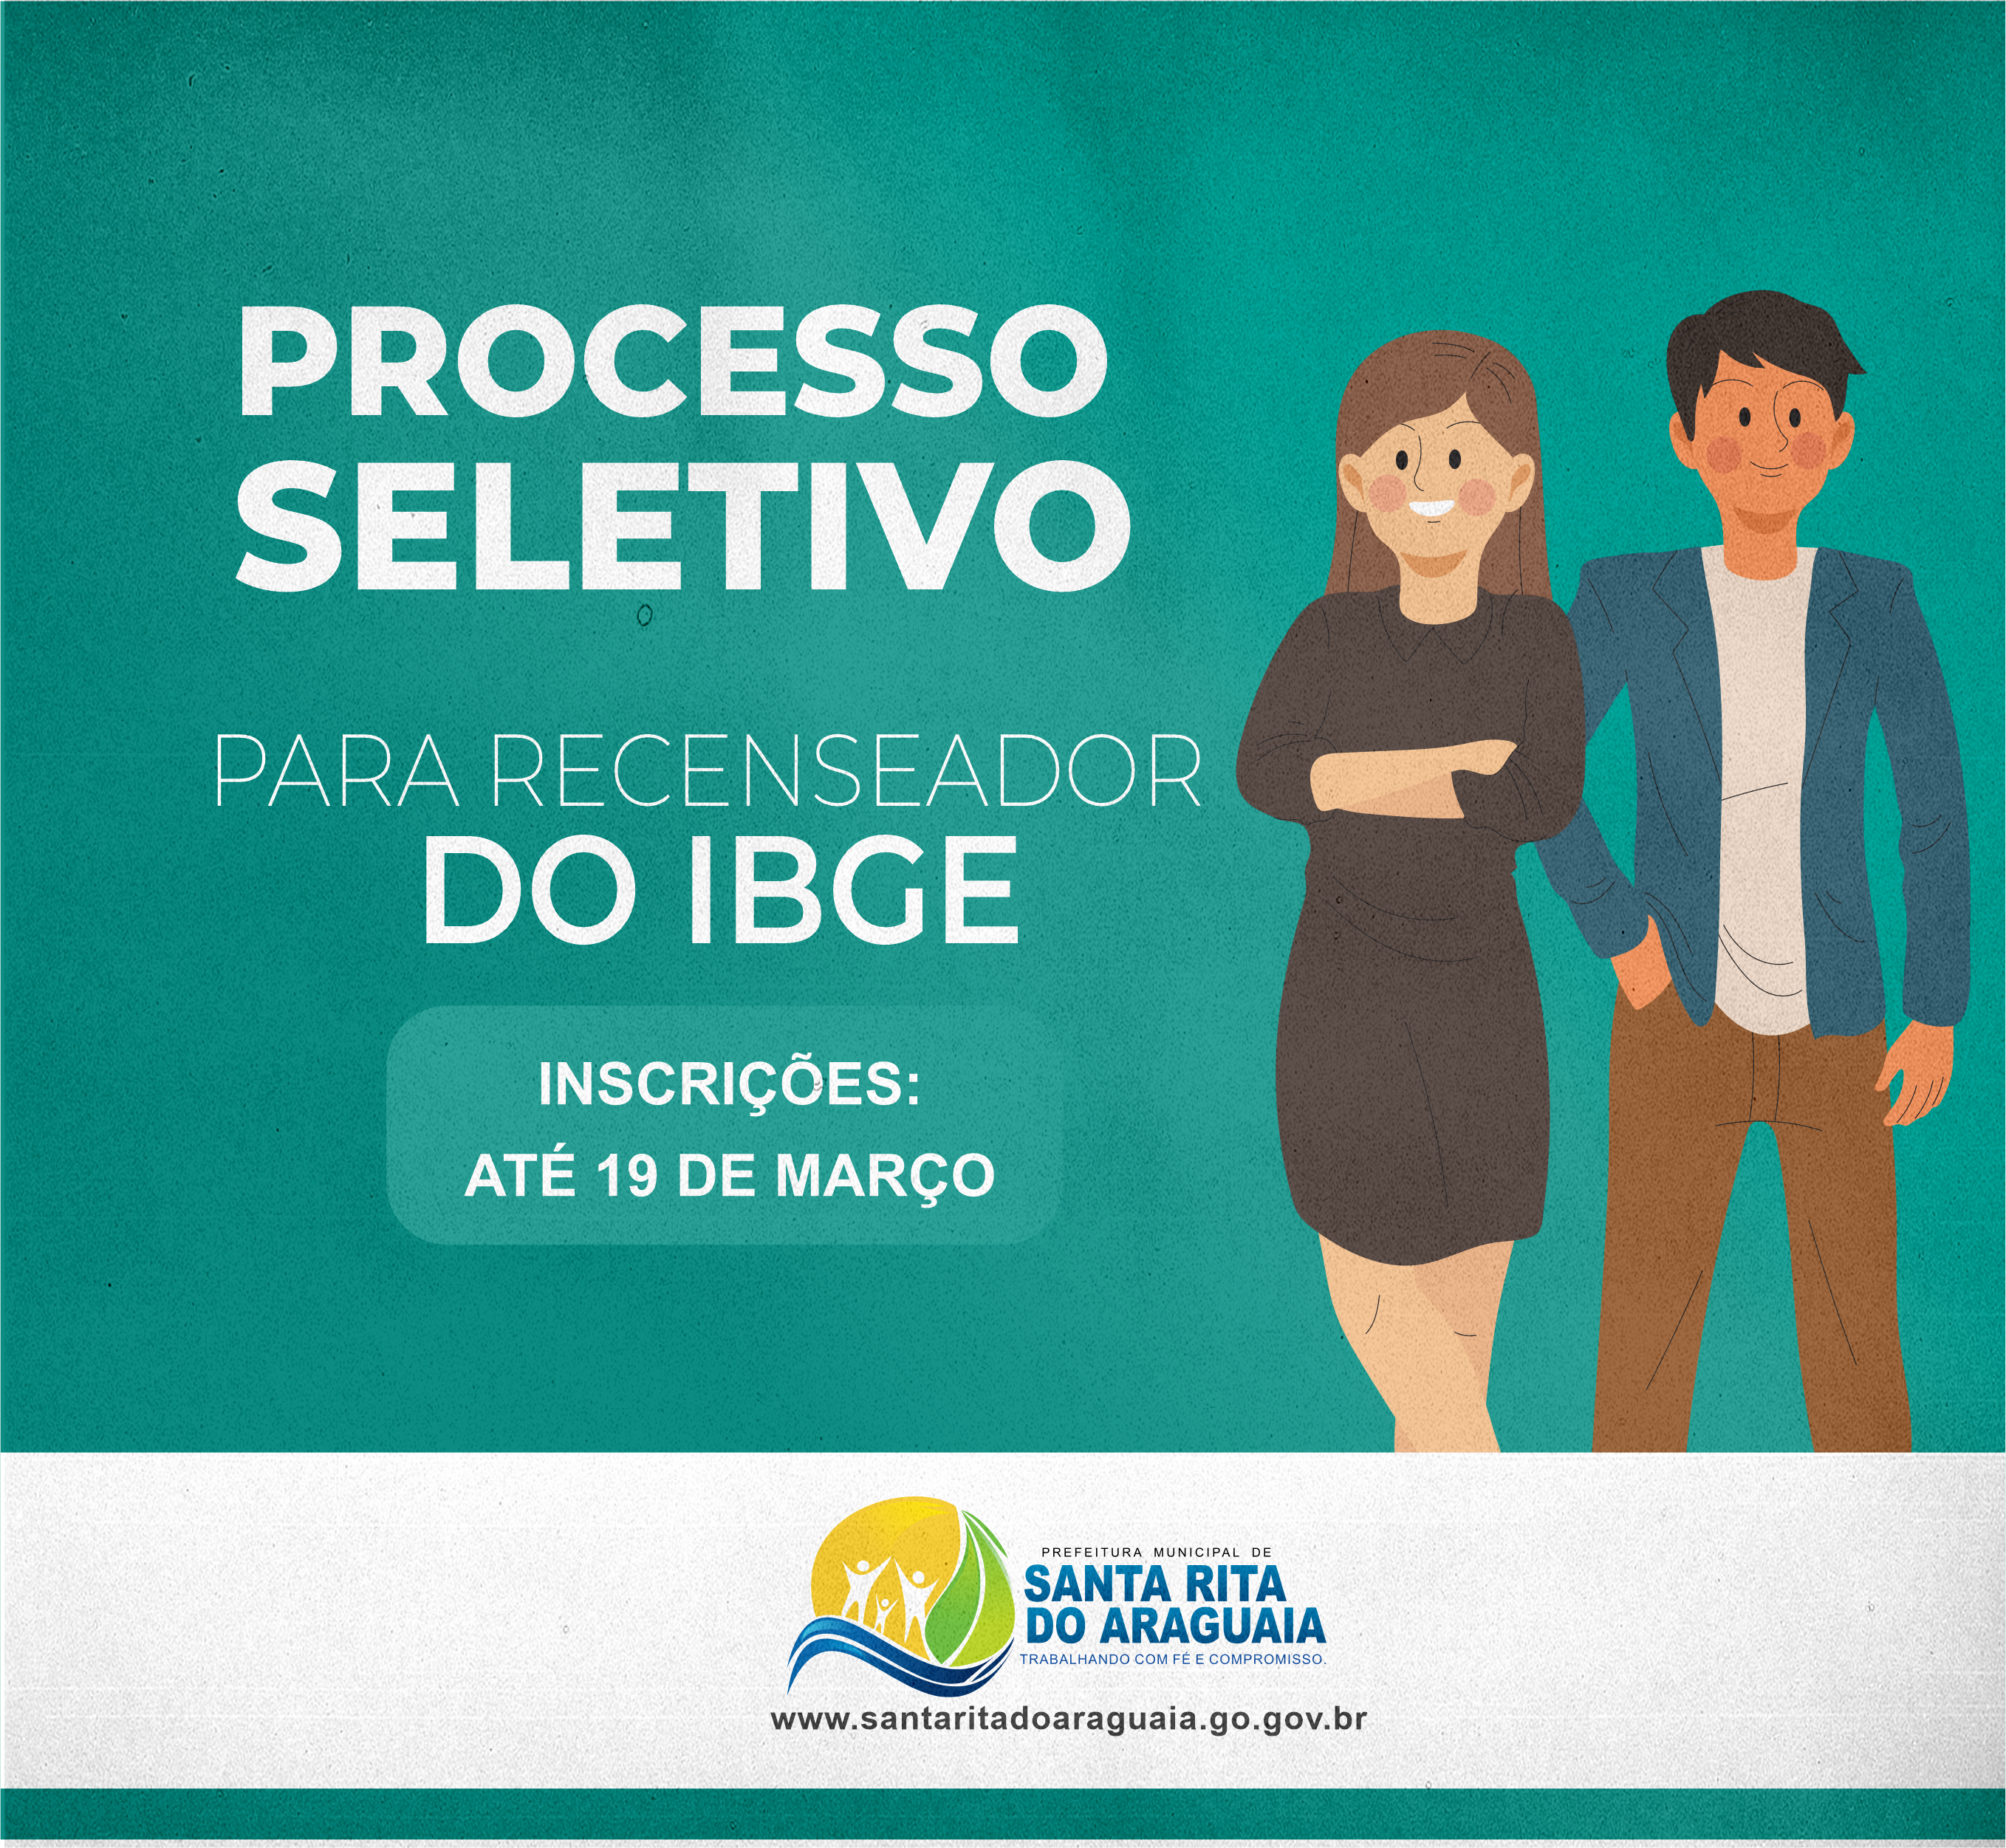 INSCRIÇÕES PARA RECENSEADOR DO IBGE SE ENCERRAM DIA 19 DE MARÇO